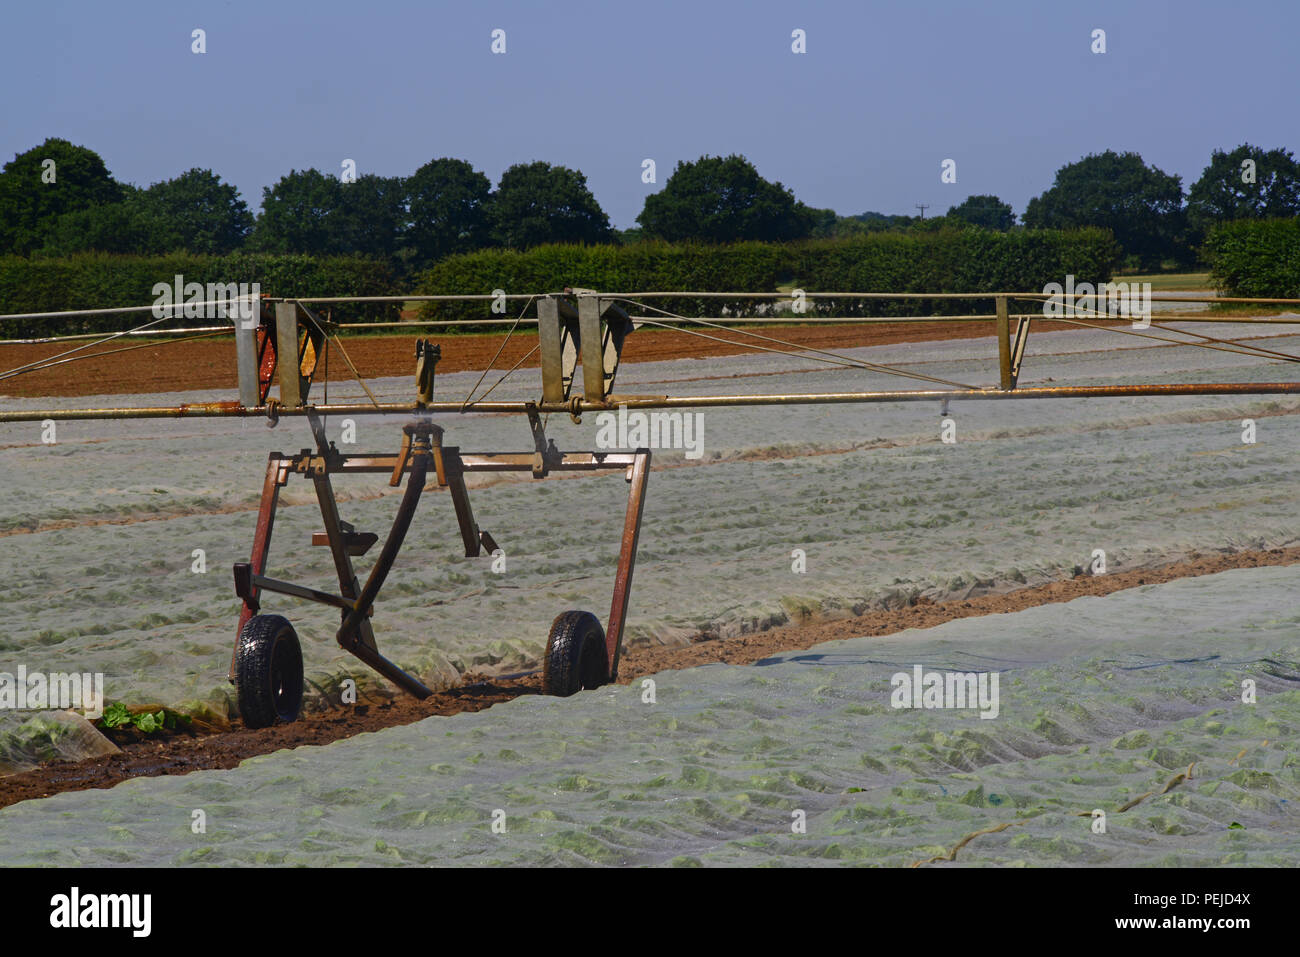 Centre du pivot du système d'irrigation des cultures de la rampe en usage durant la sécheresse en champ avec paillis de plastique pour retenir l'humidité et d'éliminer les mauvaises herbes york Royaume-Uni Banque D'Images